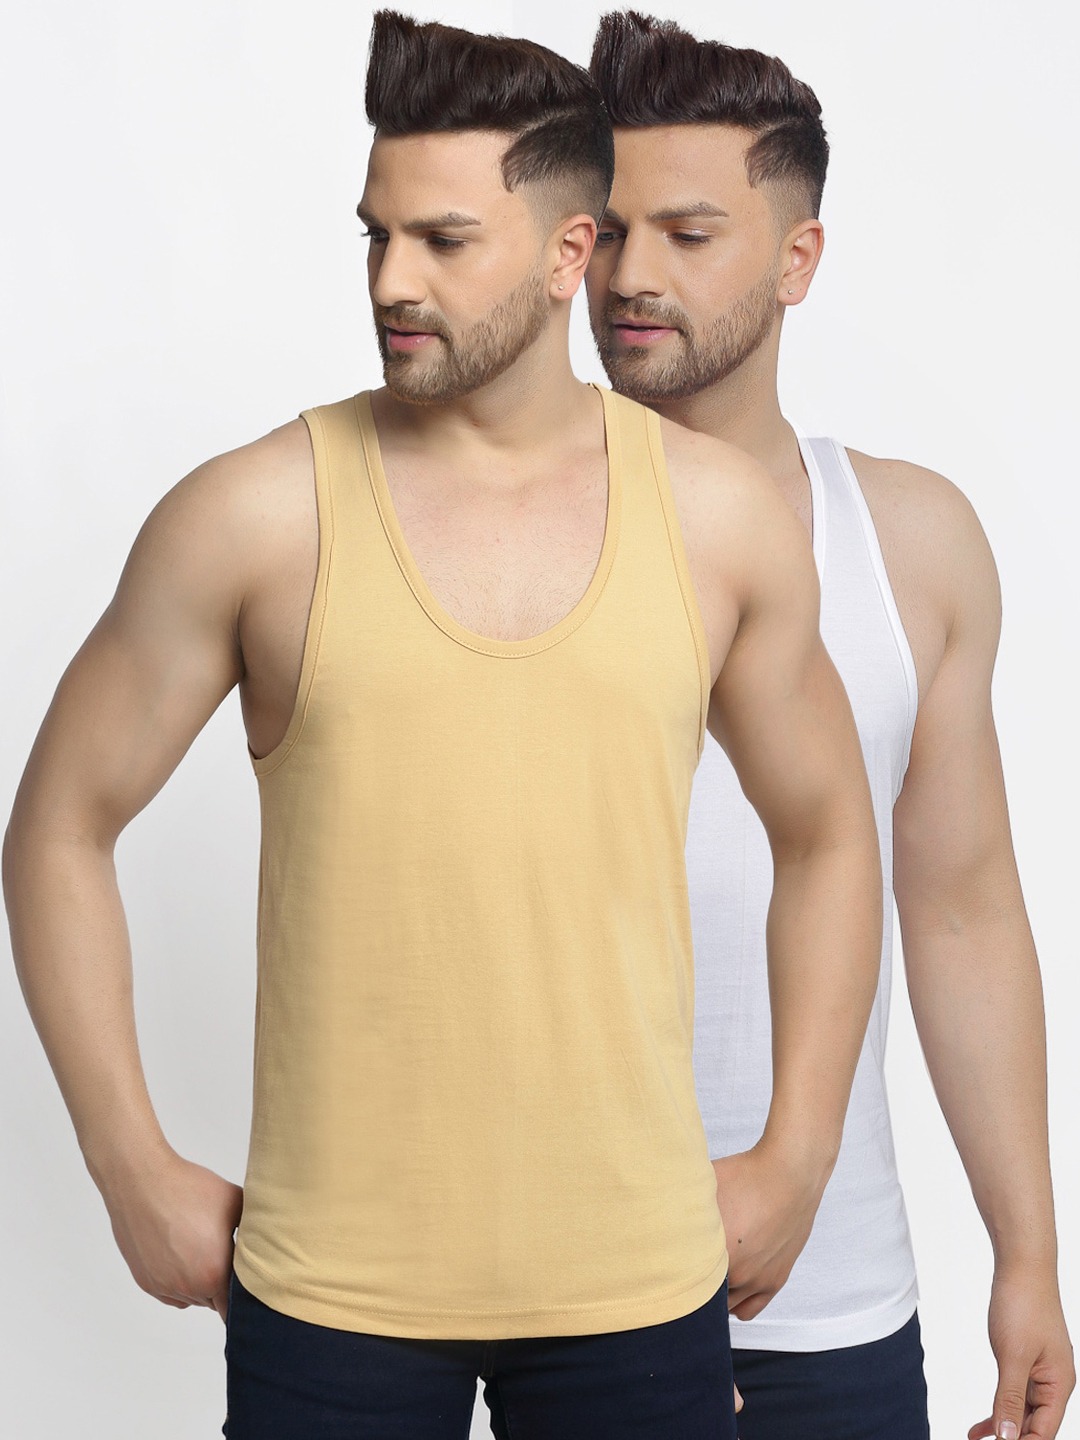 Clothing Innerwear Vests | Friskers Men Pack Of 2 White & Beige Solid Apple Cut Gym Vests - ZG20623